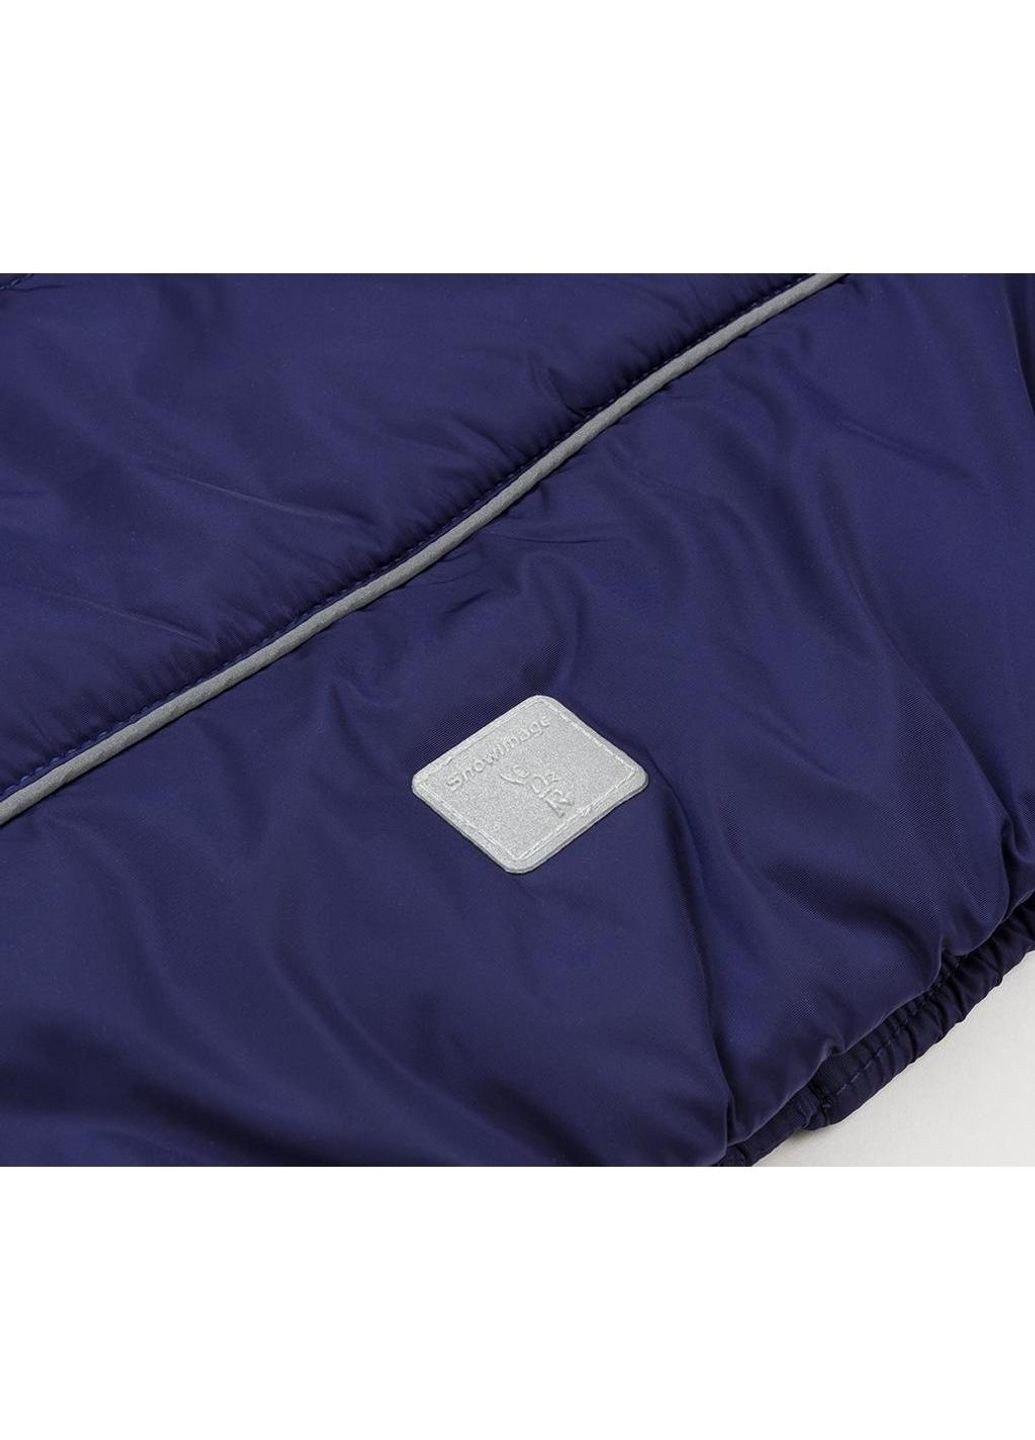 Фиолетовая демисезонная куртка с капюшоном (sicmy-g306-110b-blue) Snowimage